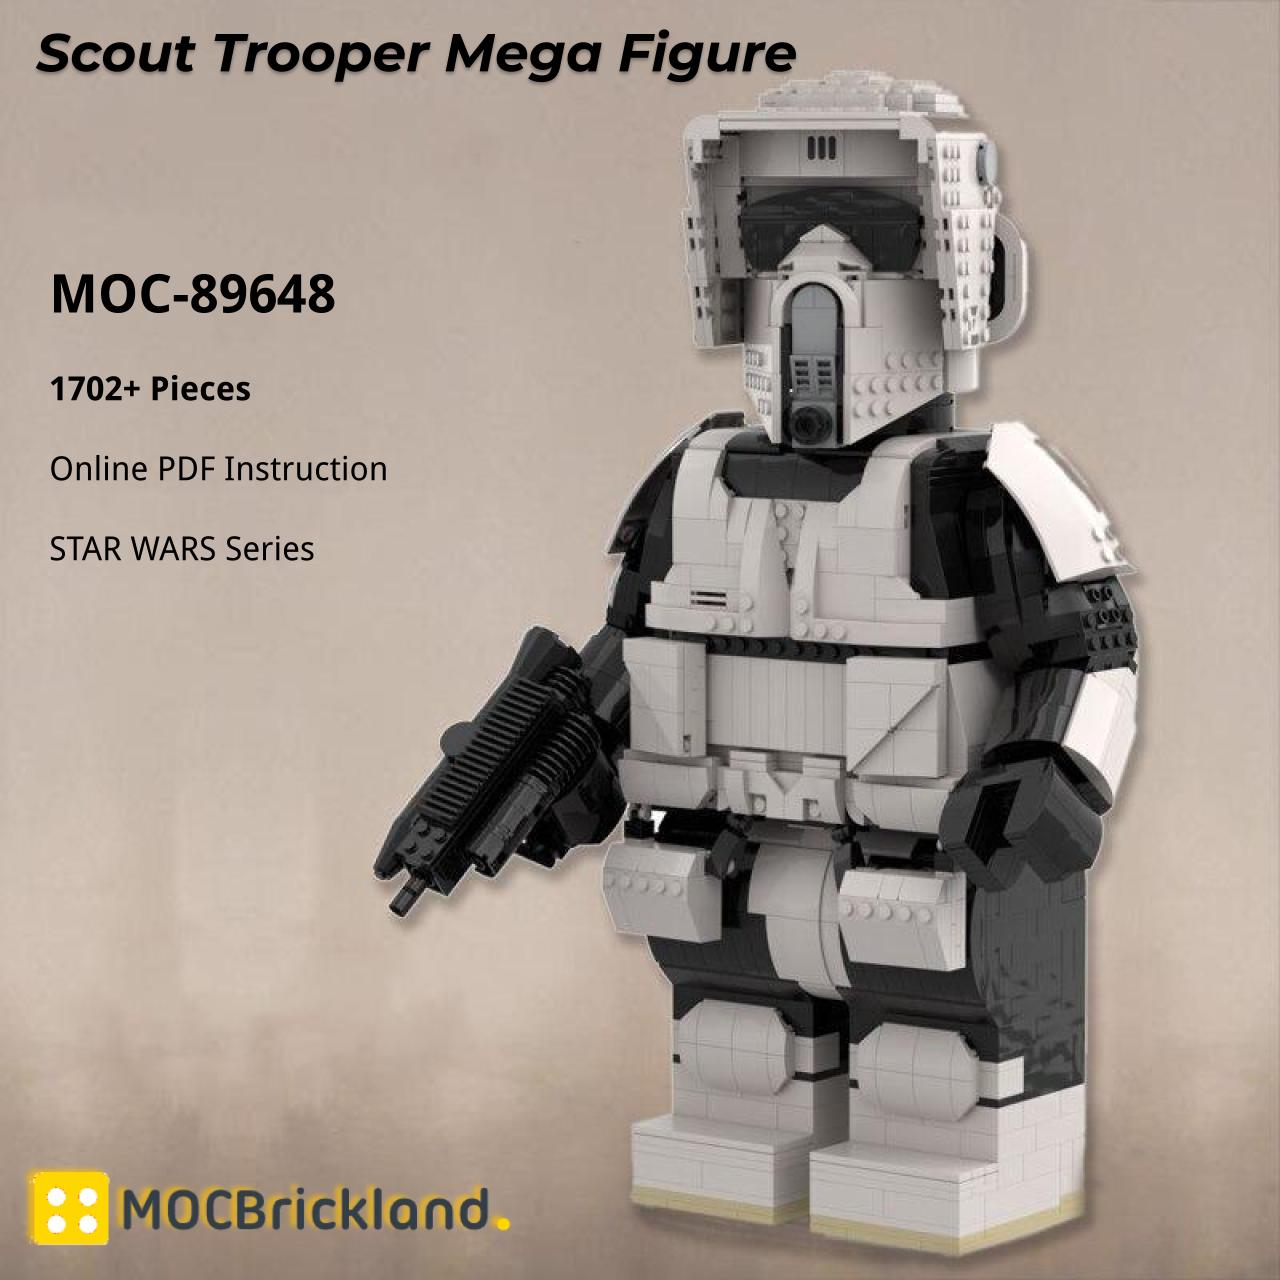 https://mouldkingblock.com/wp-content/uploads/2021/12/STAR-WARS-MOC-89648-Scout-Trooper-Mega-Figure-by-Albo.Lego-MOCBRICKLAND-2.jpg